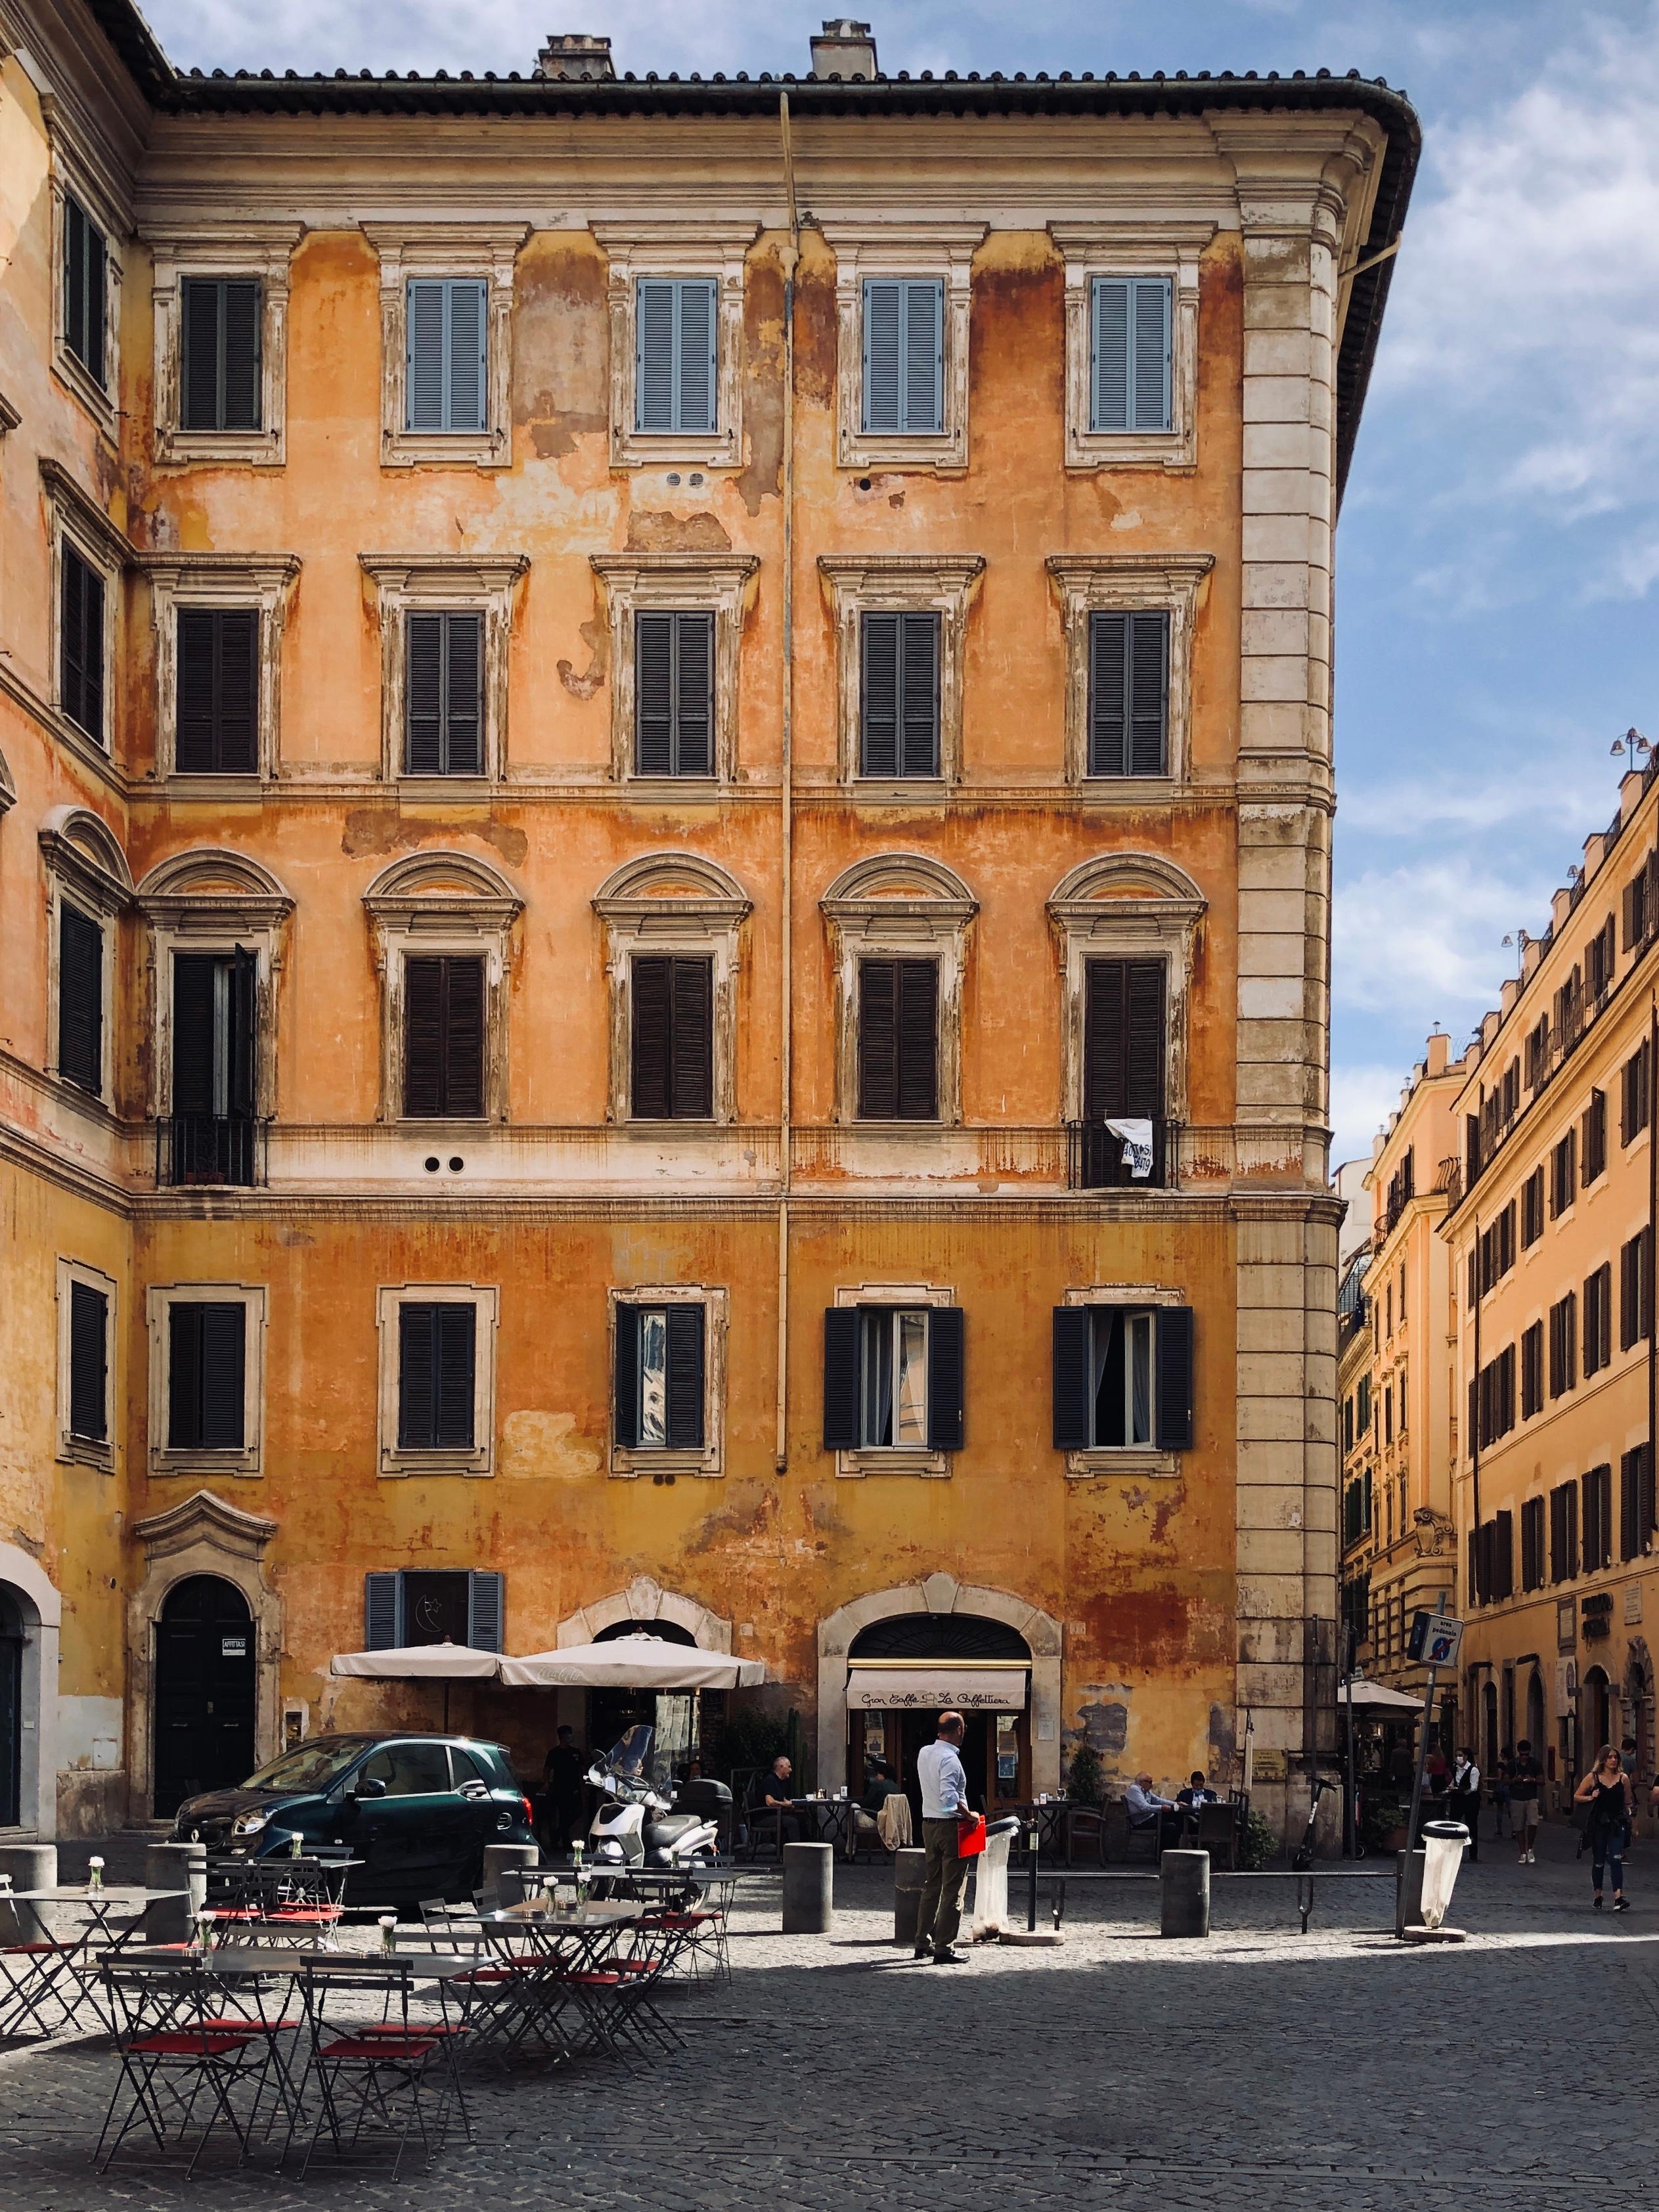 Streets of Rome
#piazza #ildolcefarniente #italia